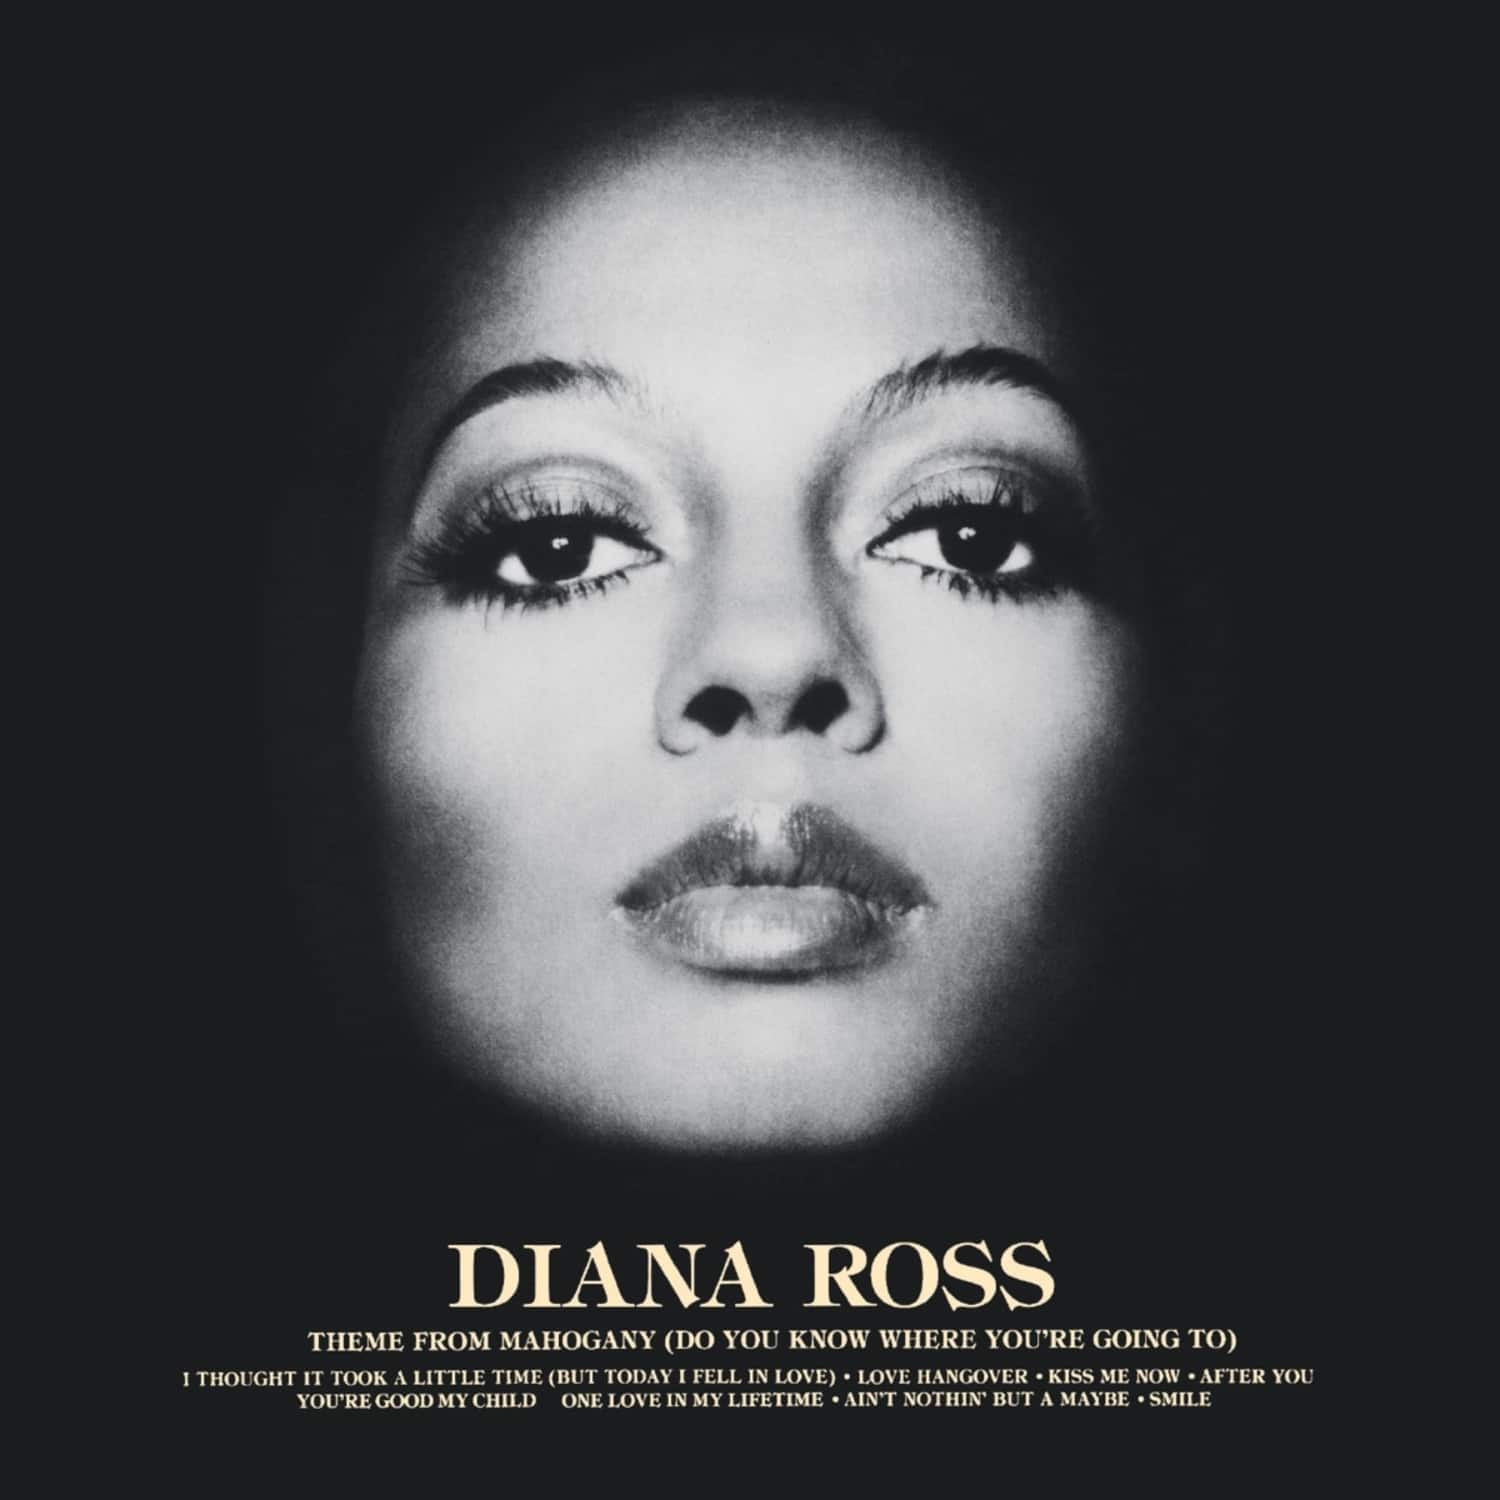 Diana Ross - DIANA ROSS 